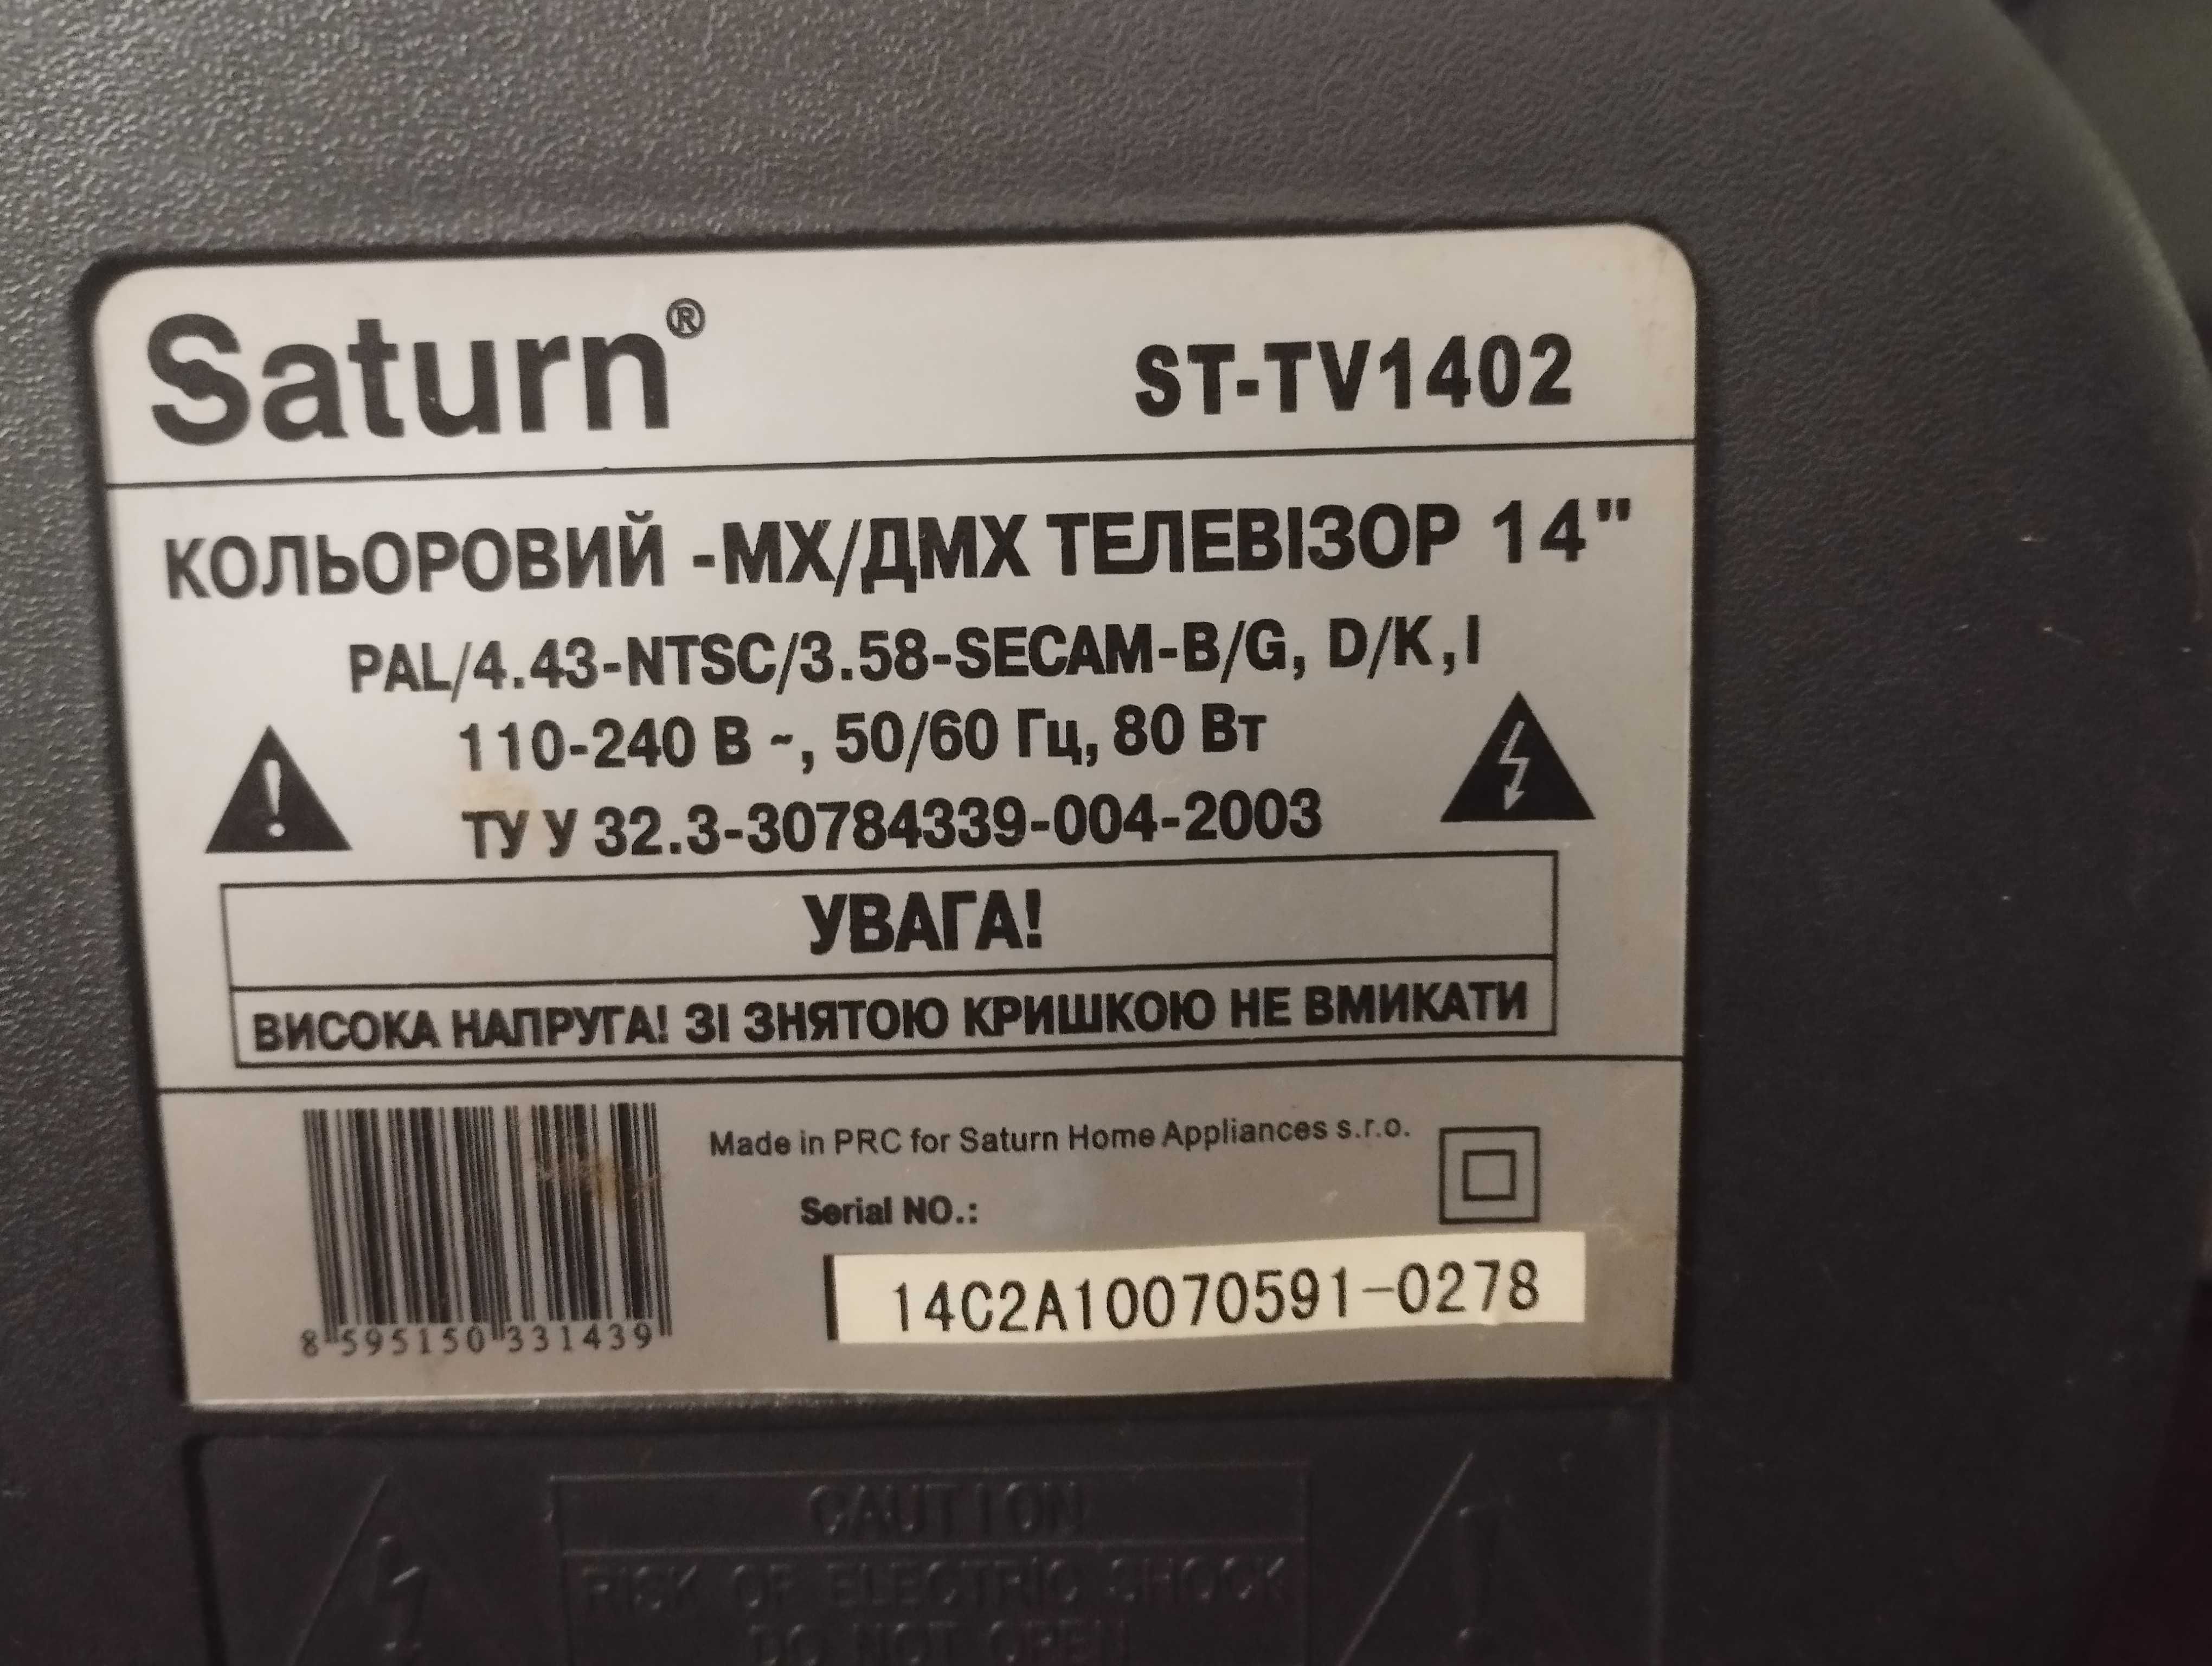 ТВ Saturn 14" ST TV 1402 с небольшим дефектом.